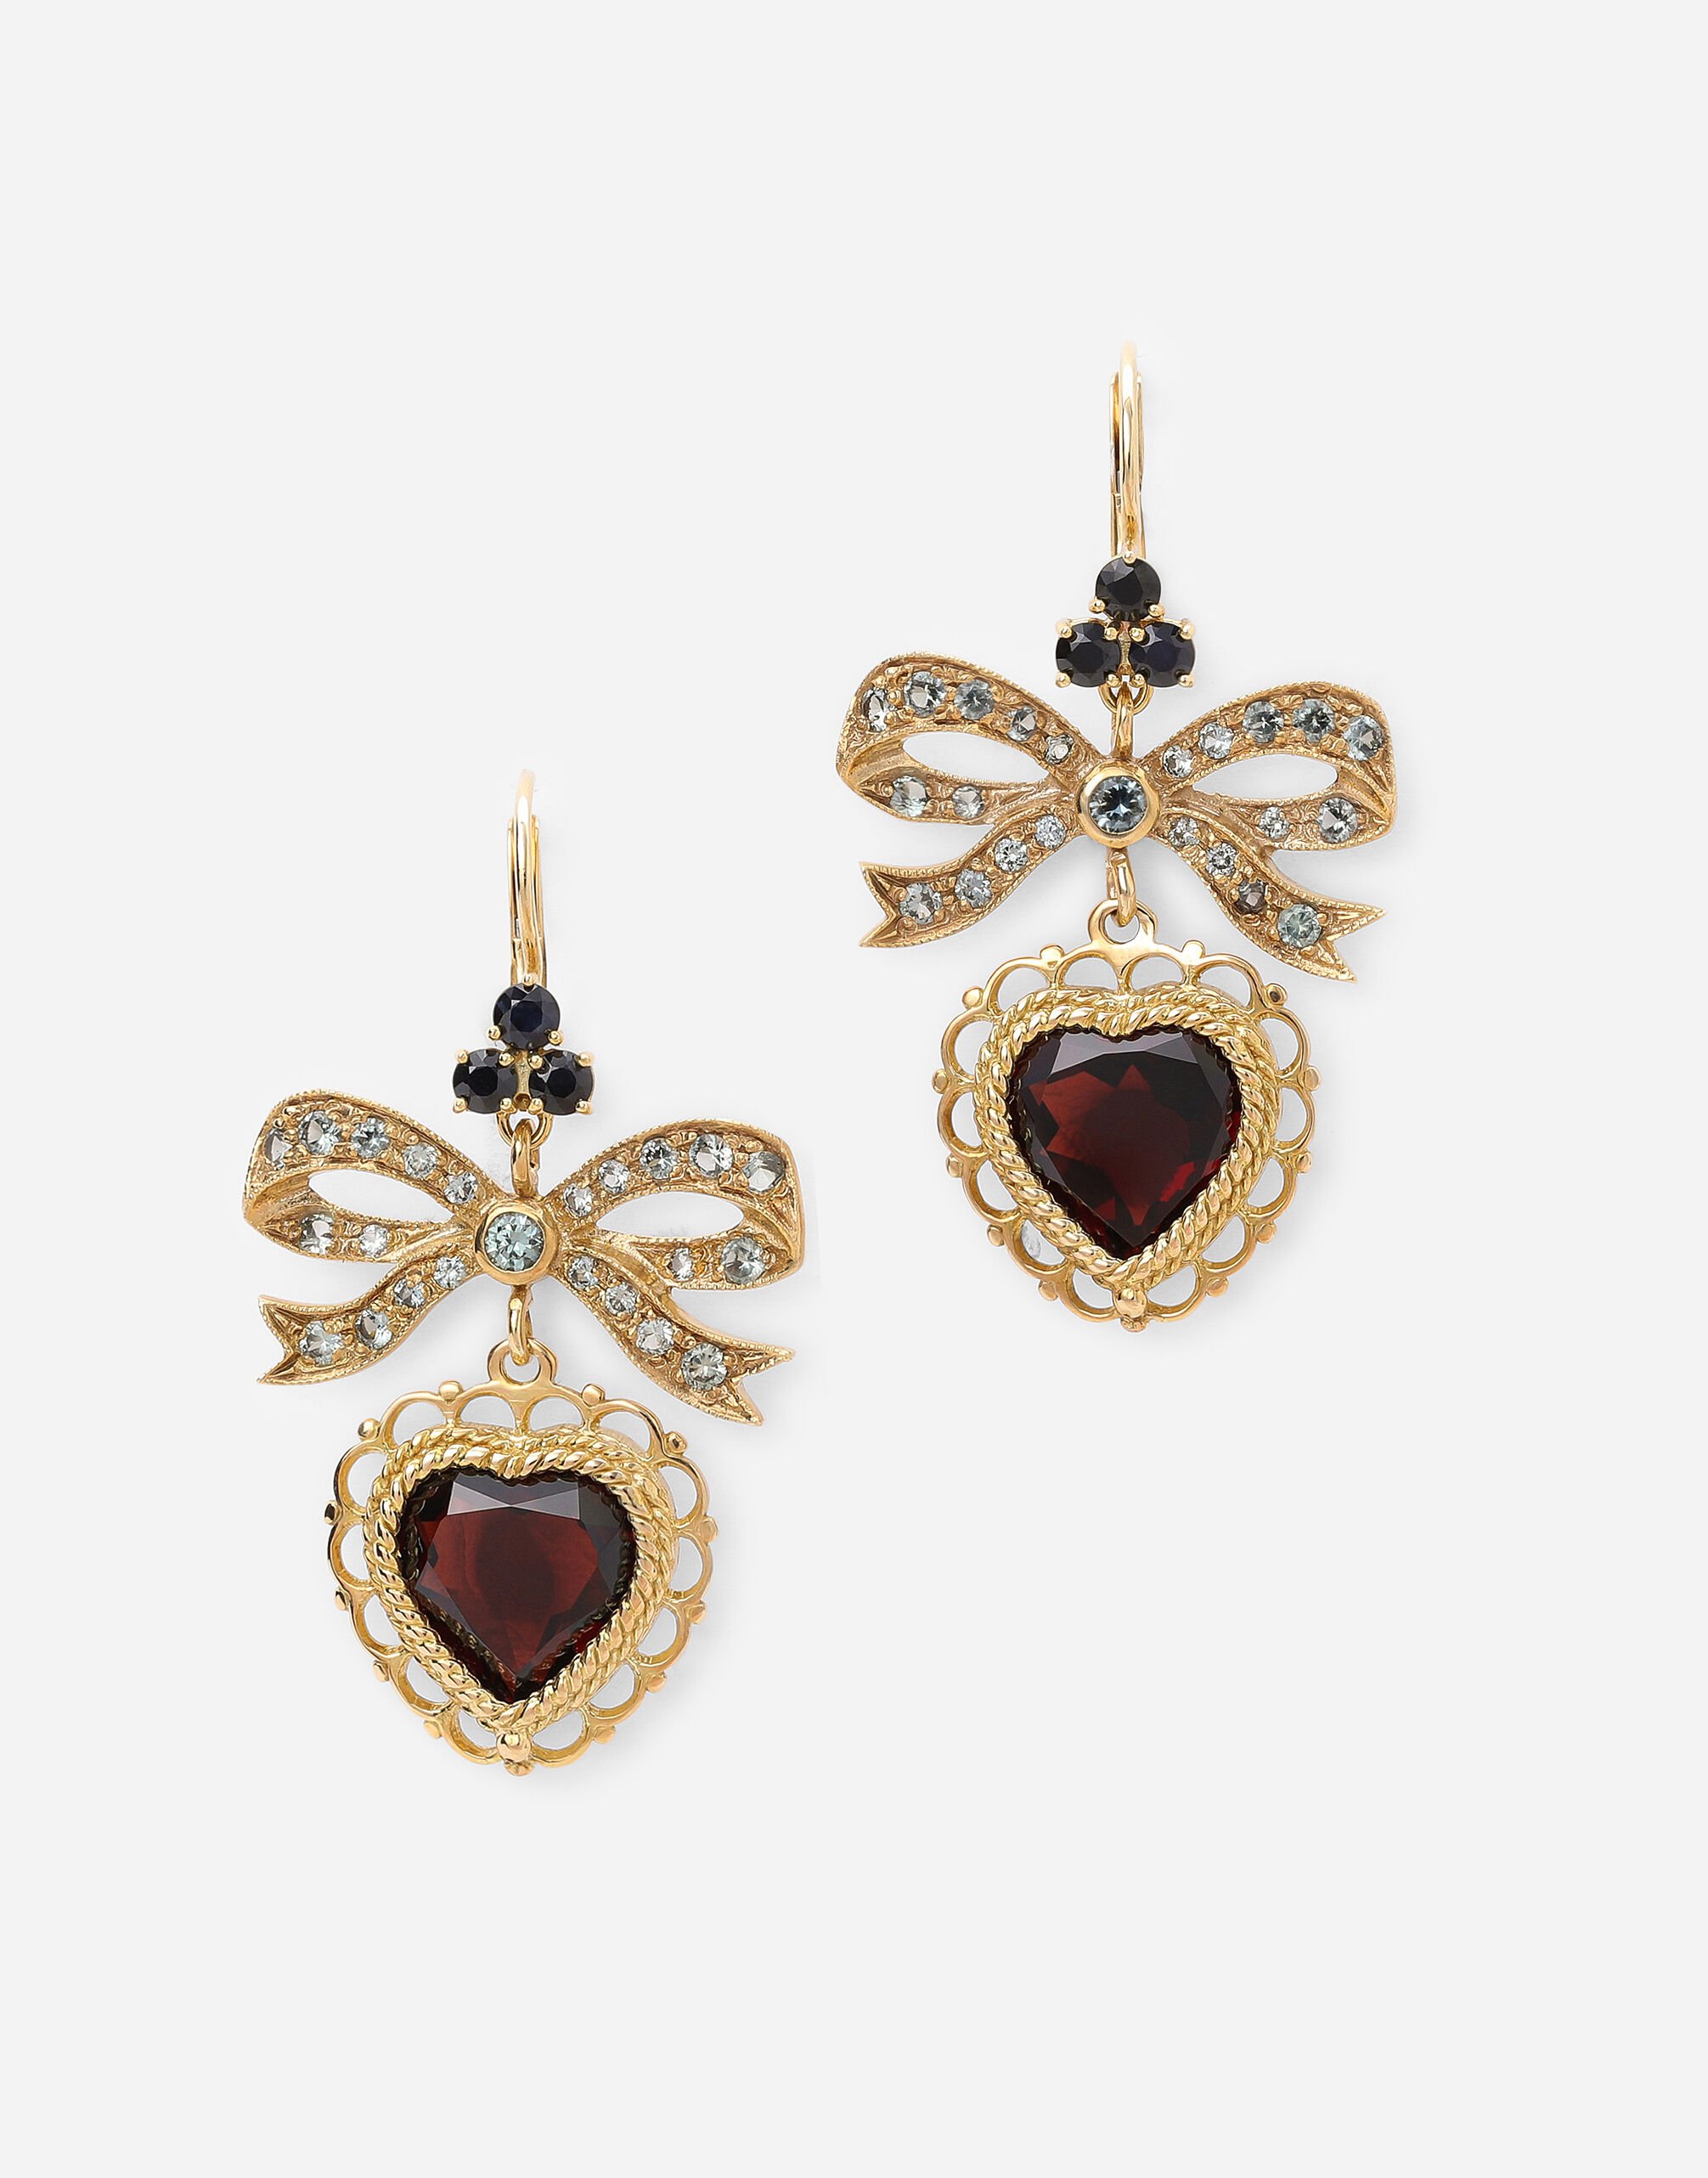 Dolce & Gabbana Heart leverback earrings in yellow 18kt gold with rhodolite garnet heart Yellow Gold WRLD1GWDWYE